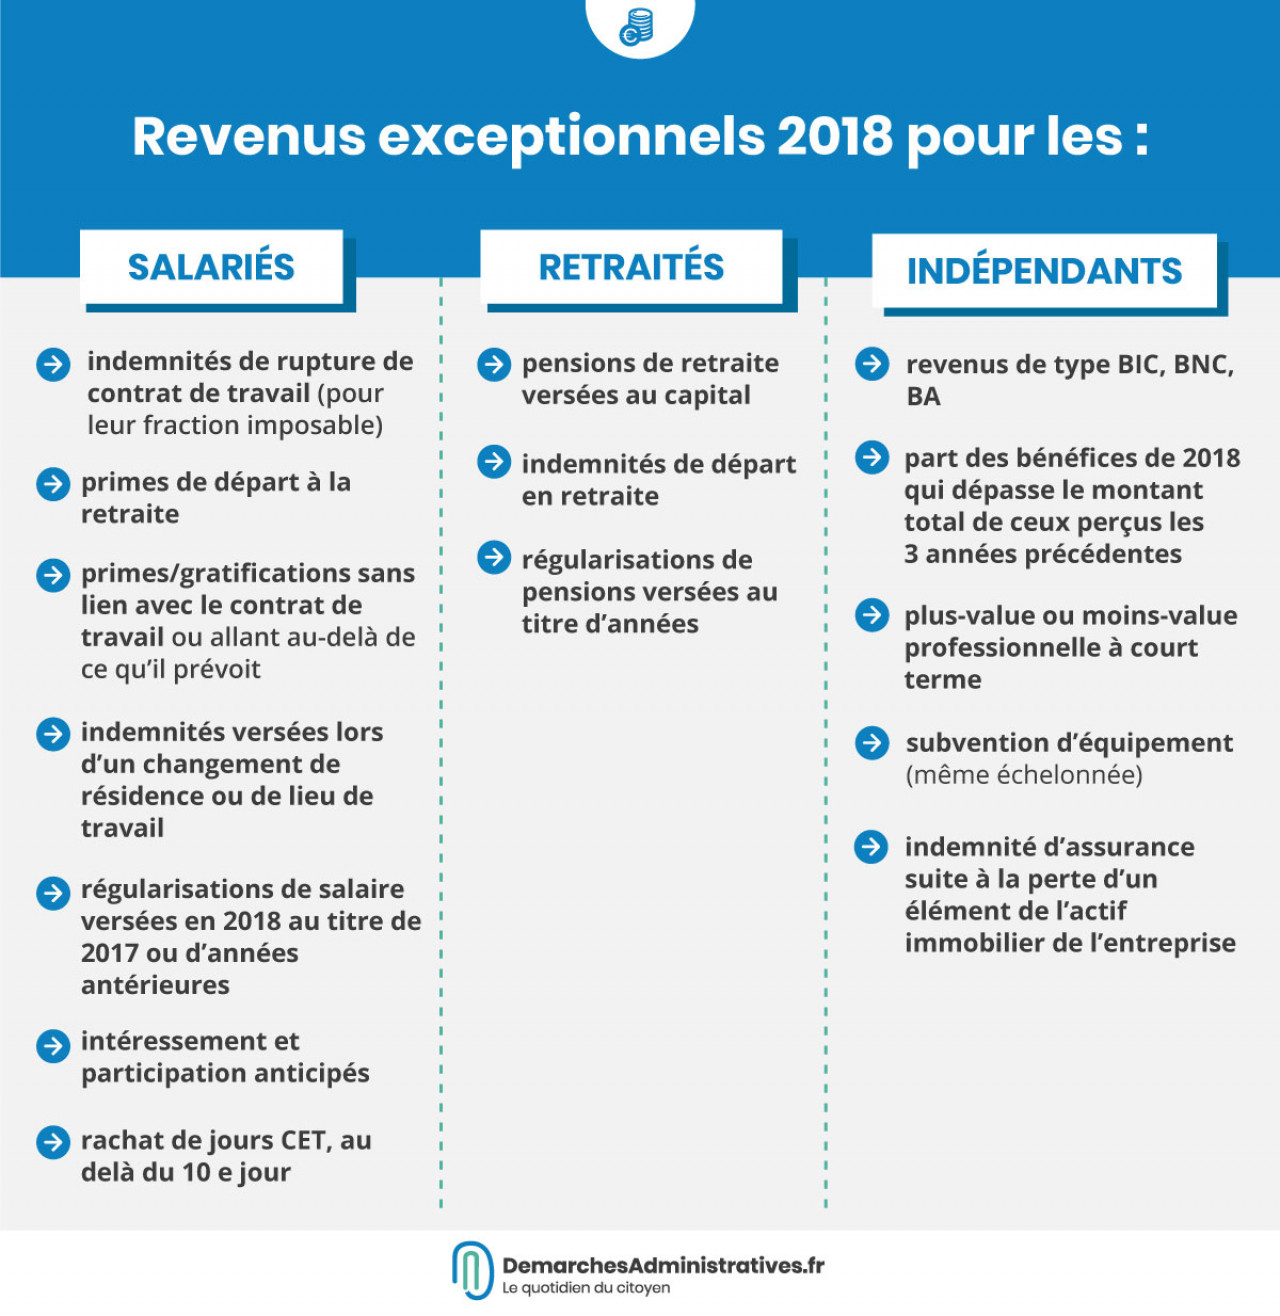 Déclarer ses revenus exceptionnels de 2018 sur la déclaration d'impôt 2019